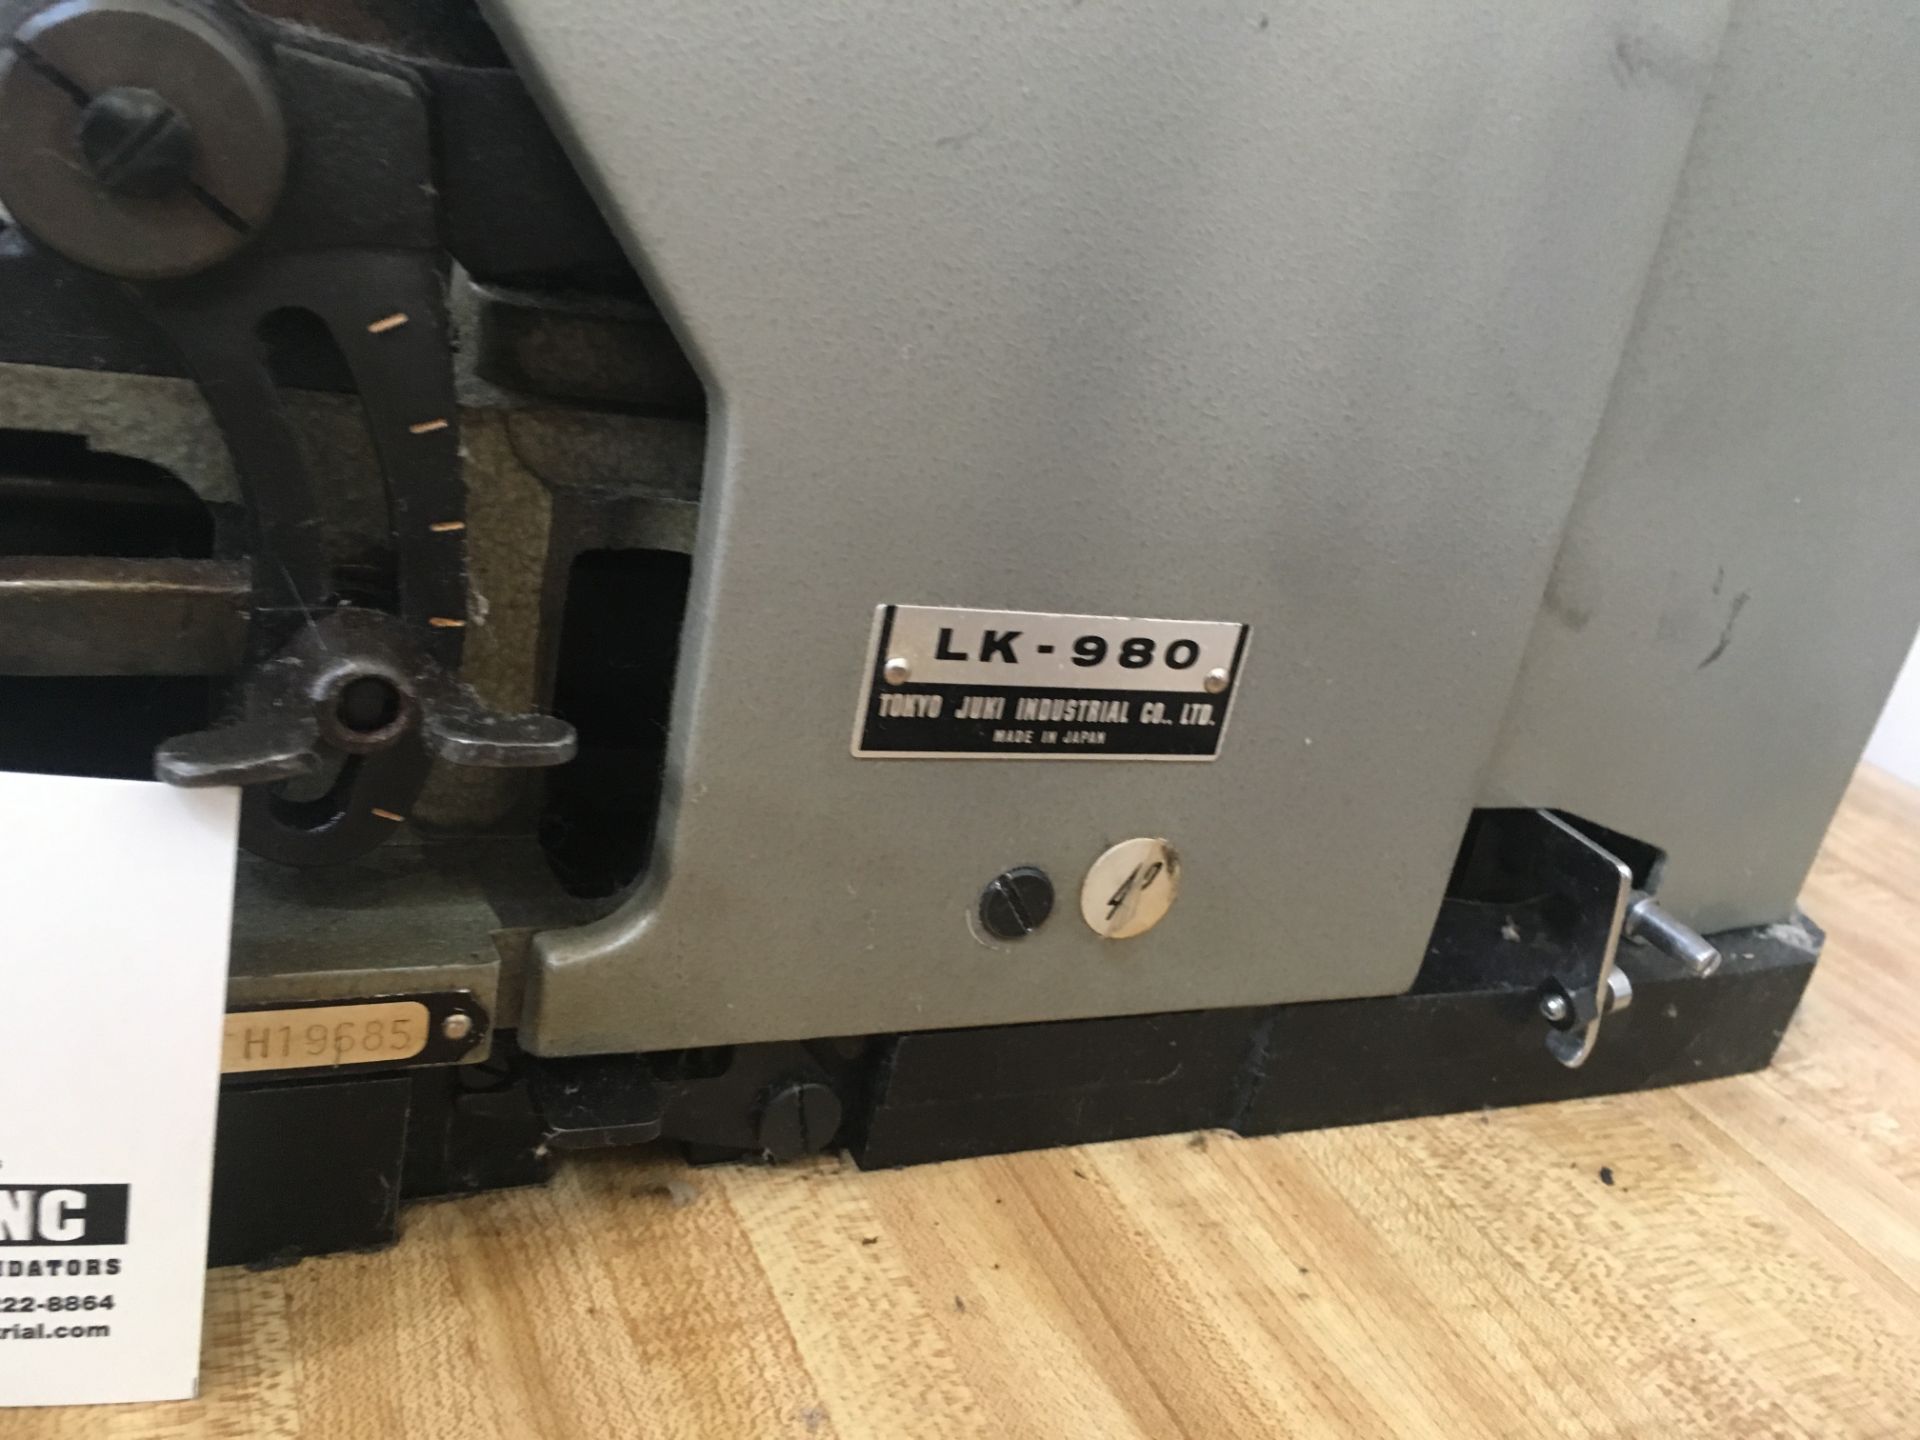 Juki LK-980 bar tacking machine (Tacker machine) - Image 3 of 3